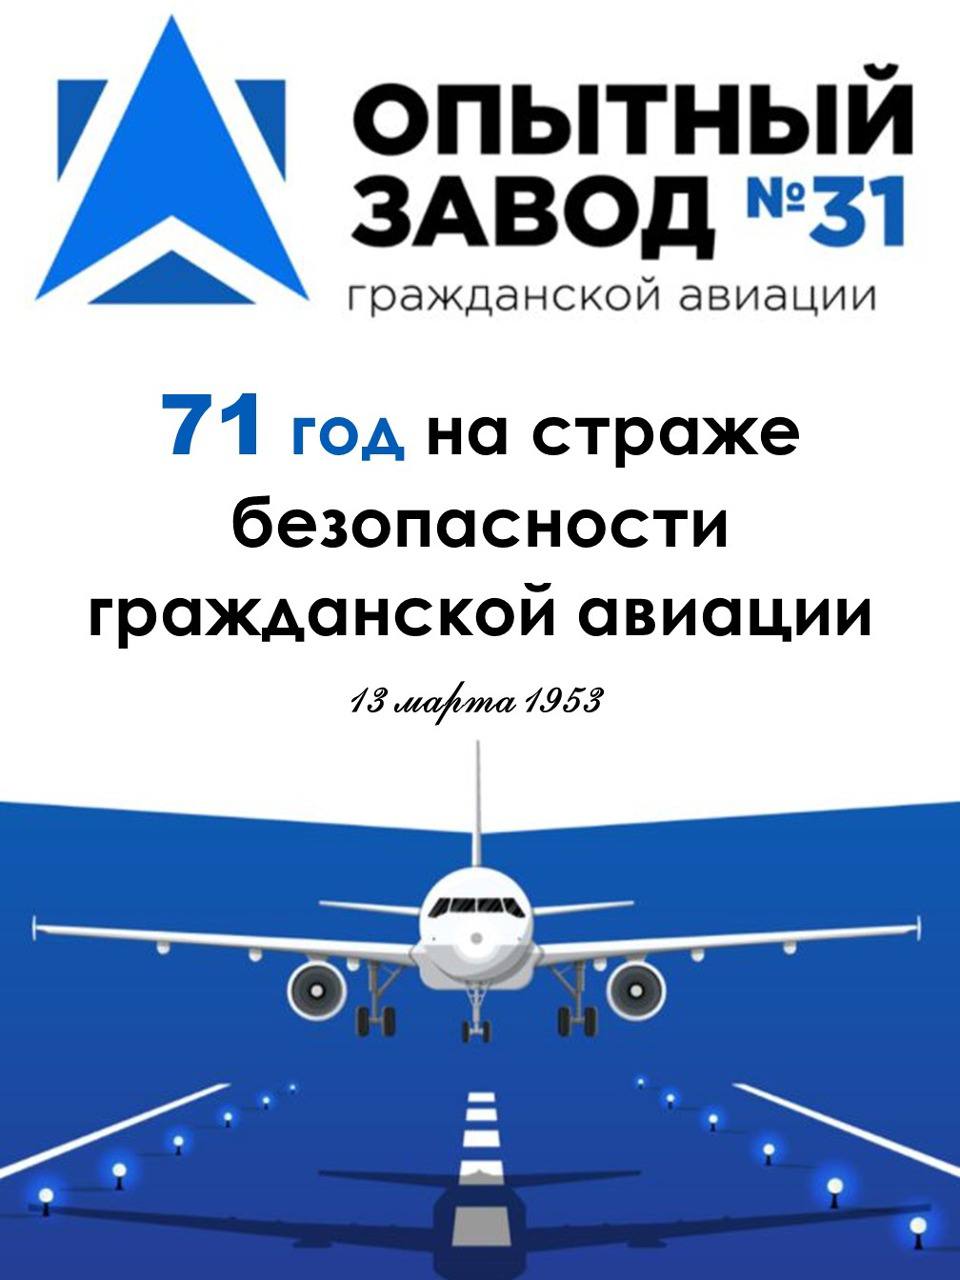 ООО «Опытный завод №31 Гражданской авиации» отмечает день рождения! 